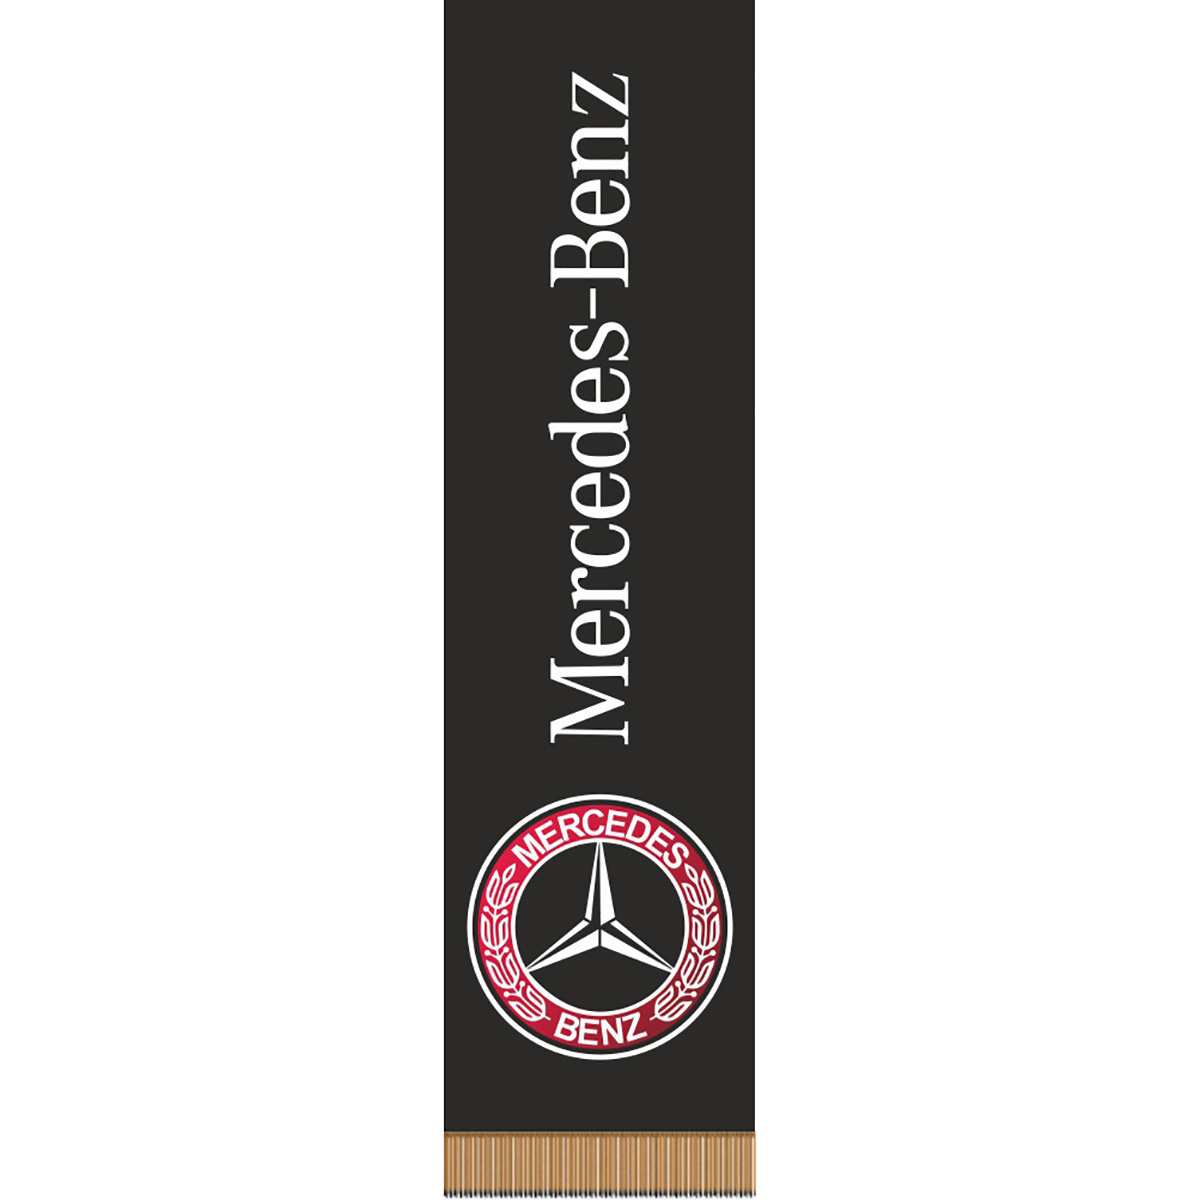 Вымпел прямоугольный Mersedes-Benz фон черный (200х55) цветной (1шт)  SKYWAY: фото, описание, купить. Интернет-магазин 3DAvto.ru